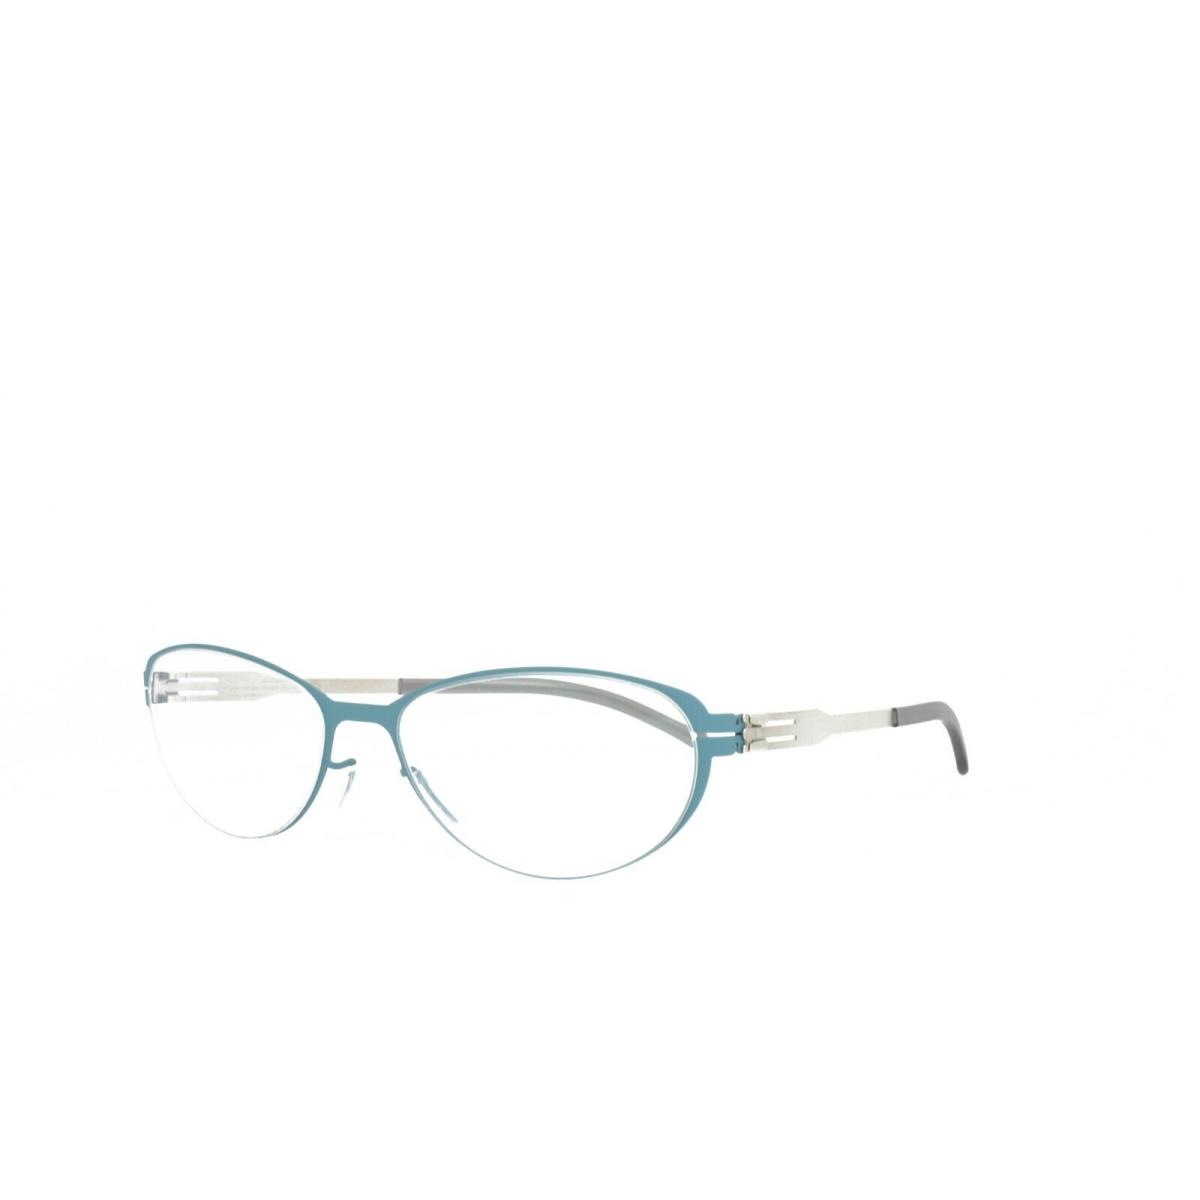 IC Berlin Eyeglasses Rossana P. Aqua Pearl 53-18-145